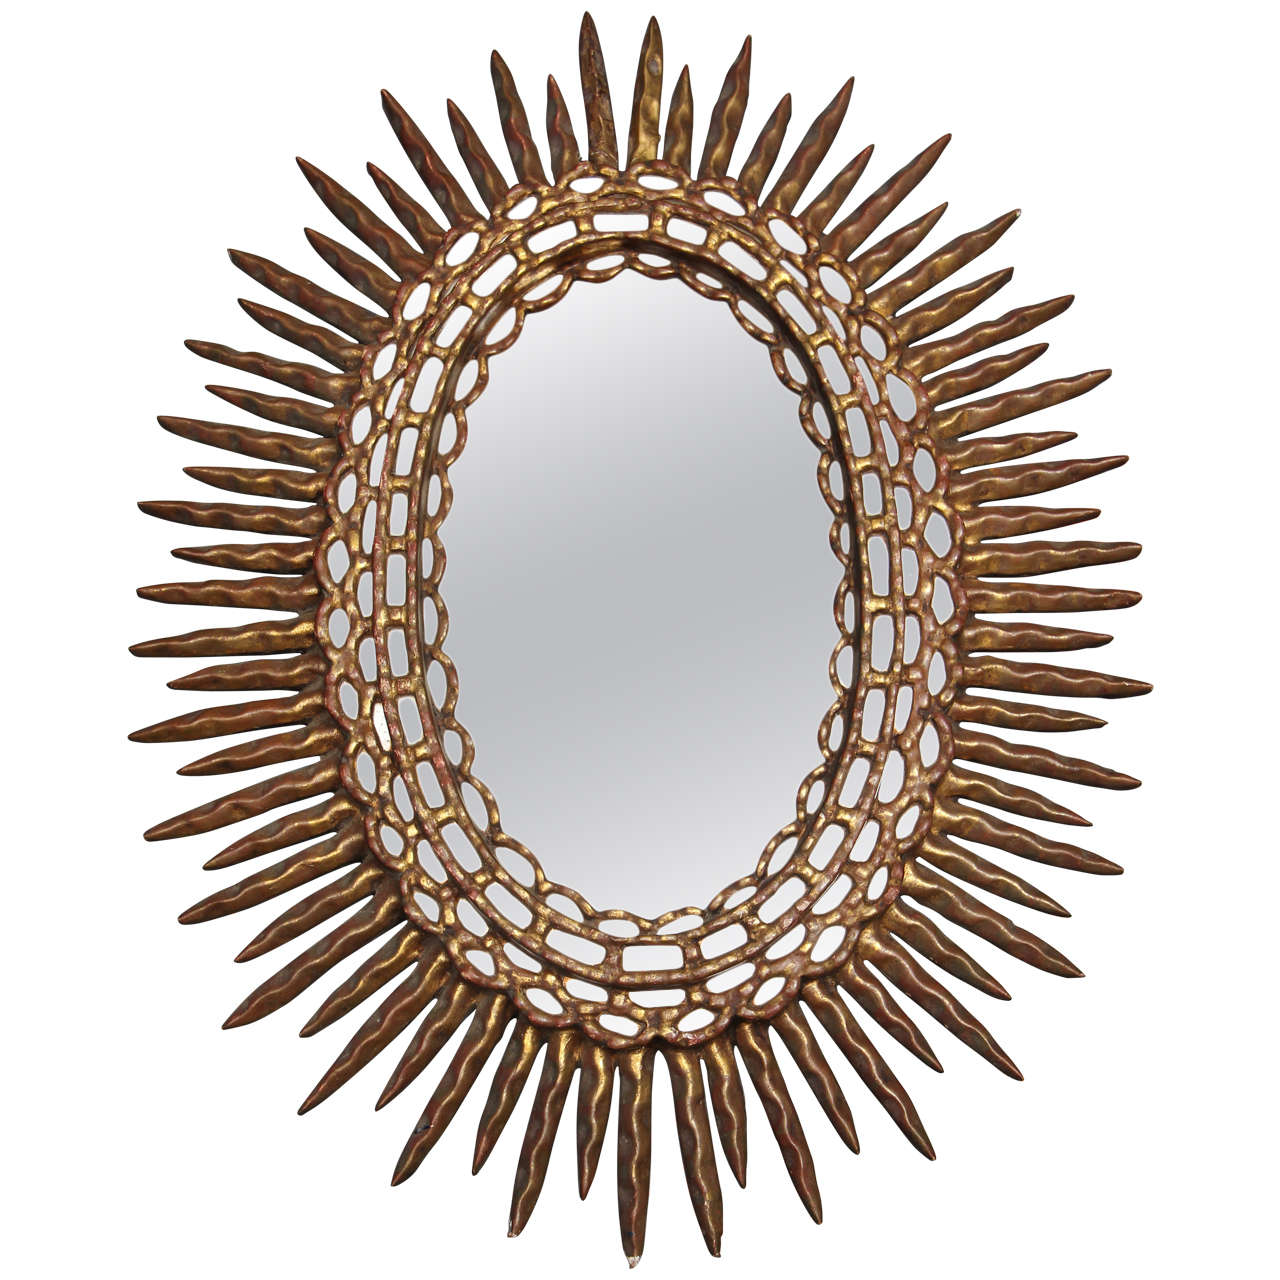 Oval Sunburst Mirror